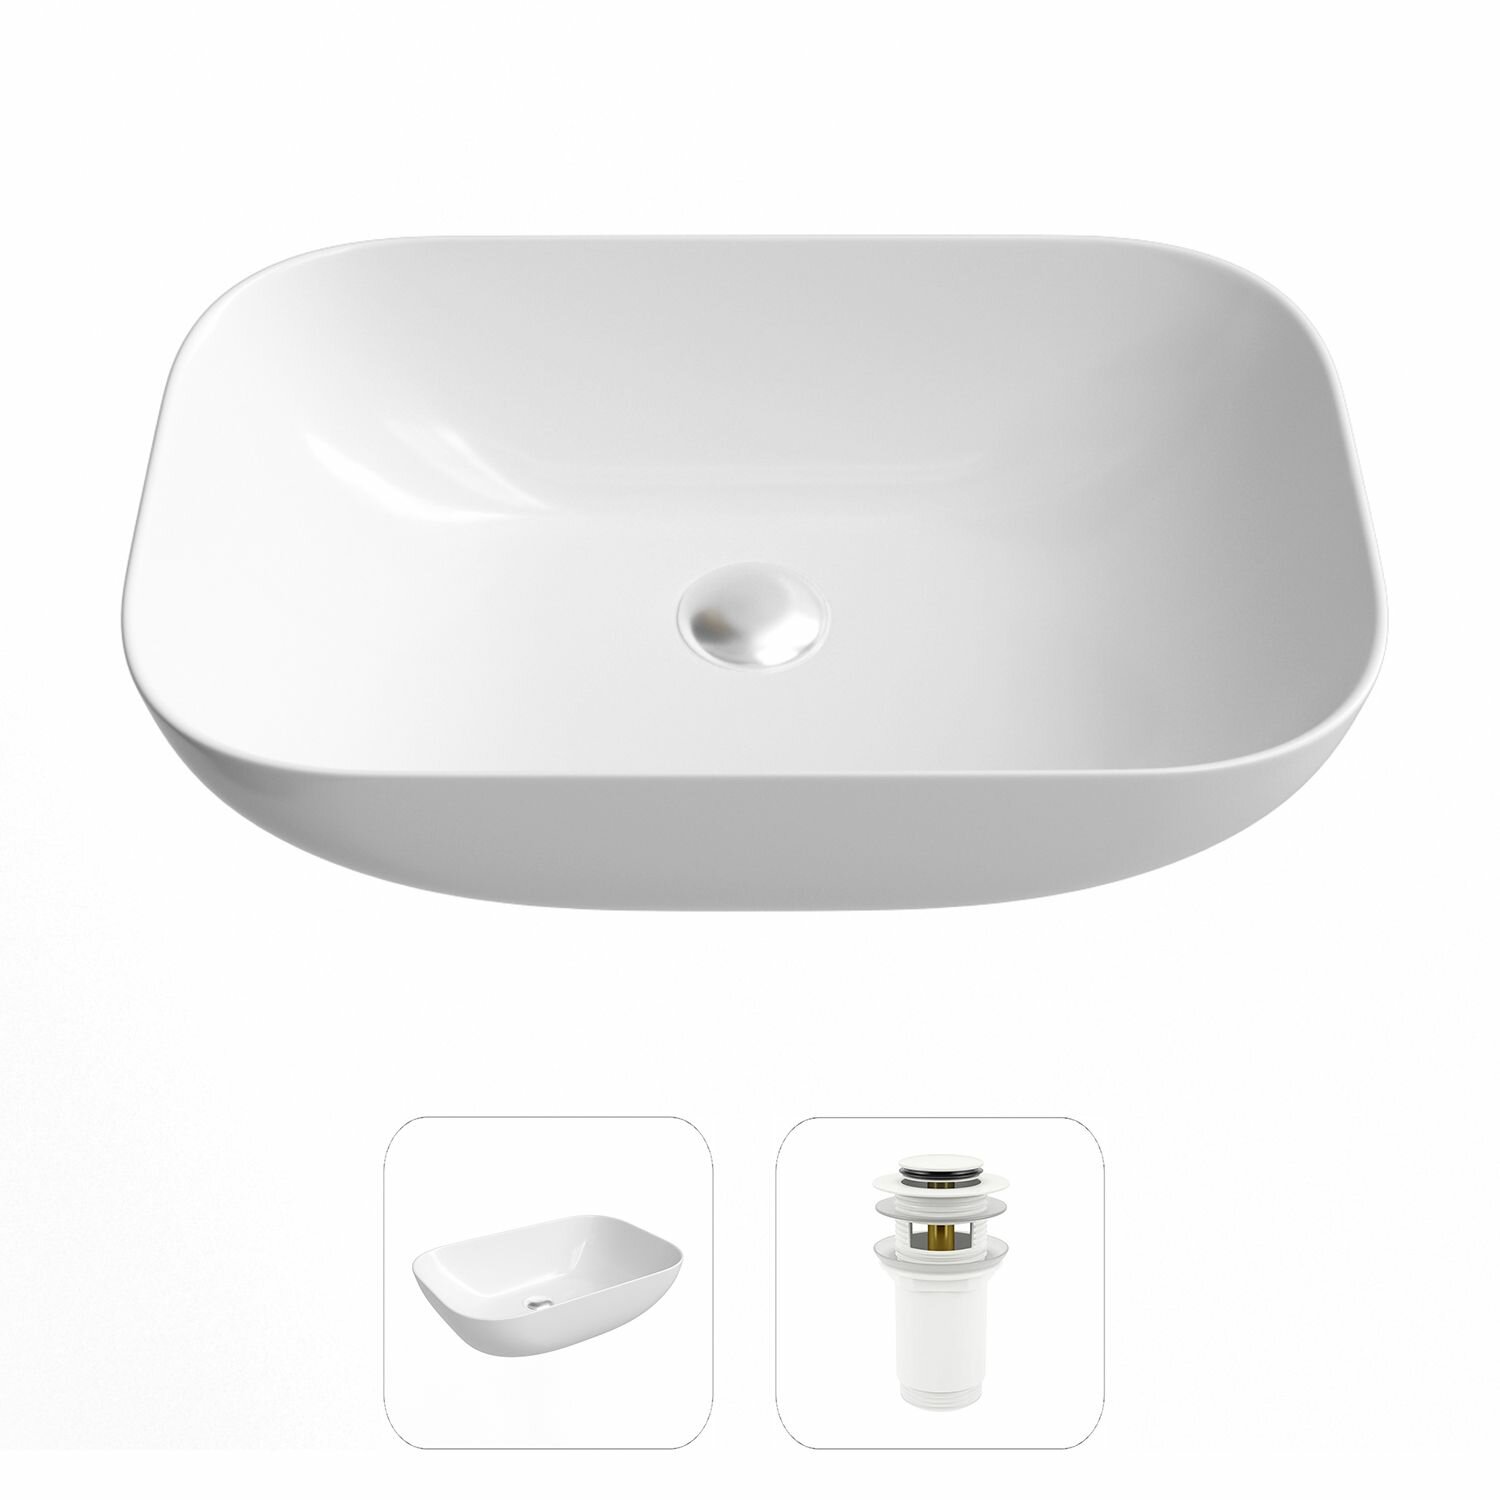 Накладная раковина в ванную Helmken 45450000 комплект 2 в 1: умывальник прямоугольный 50,5 см, донный клапан click-clack в цвете белый